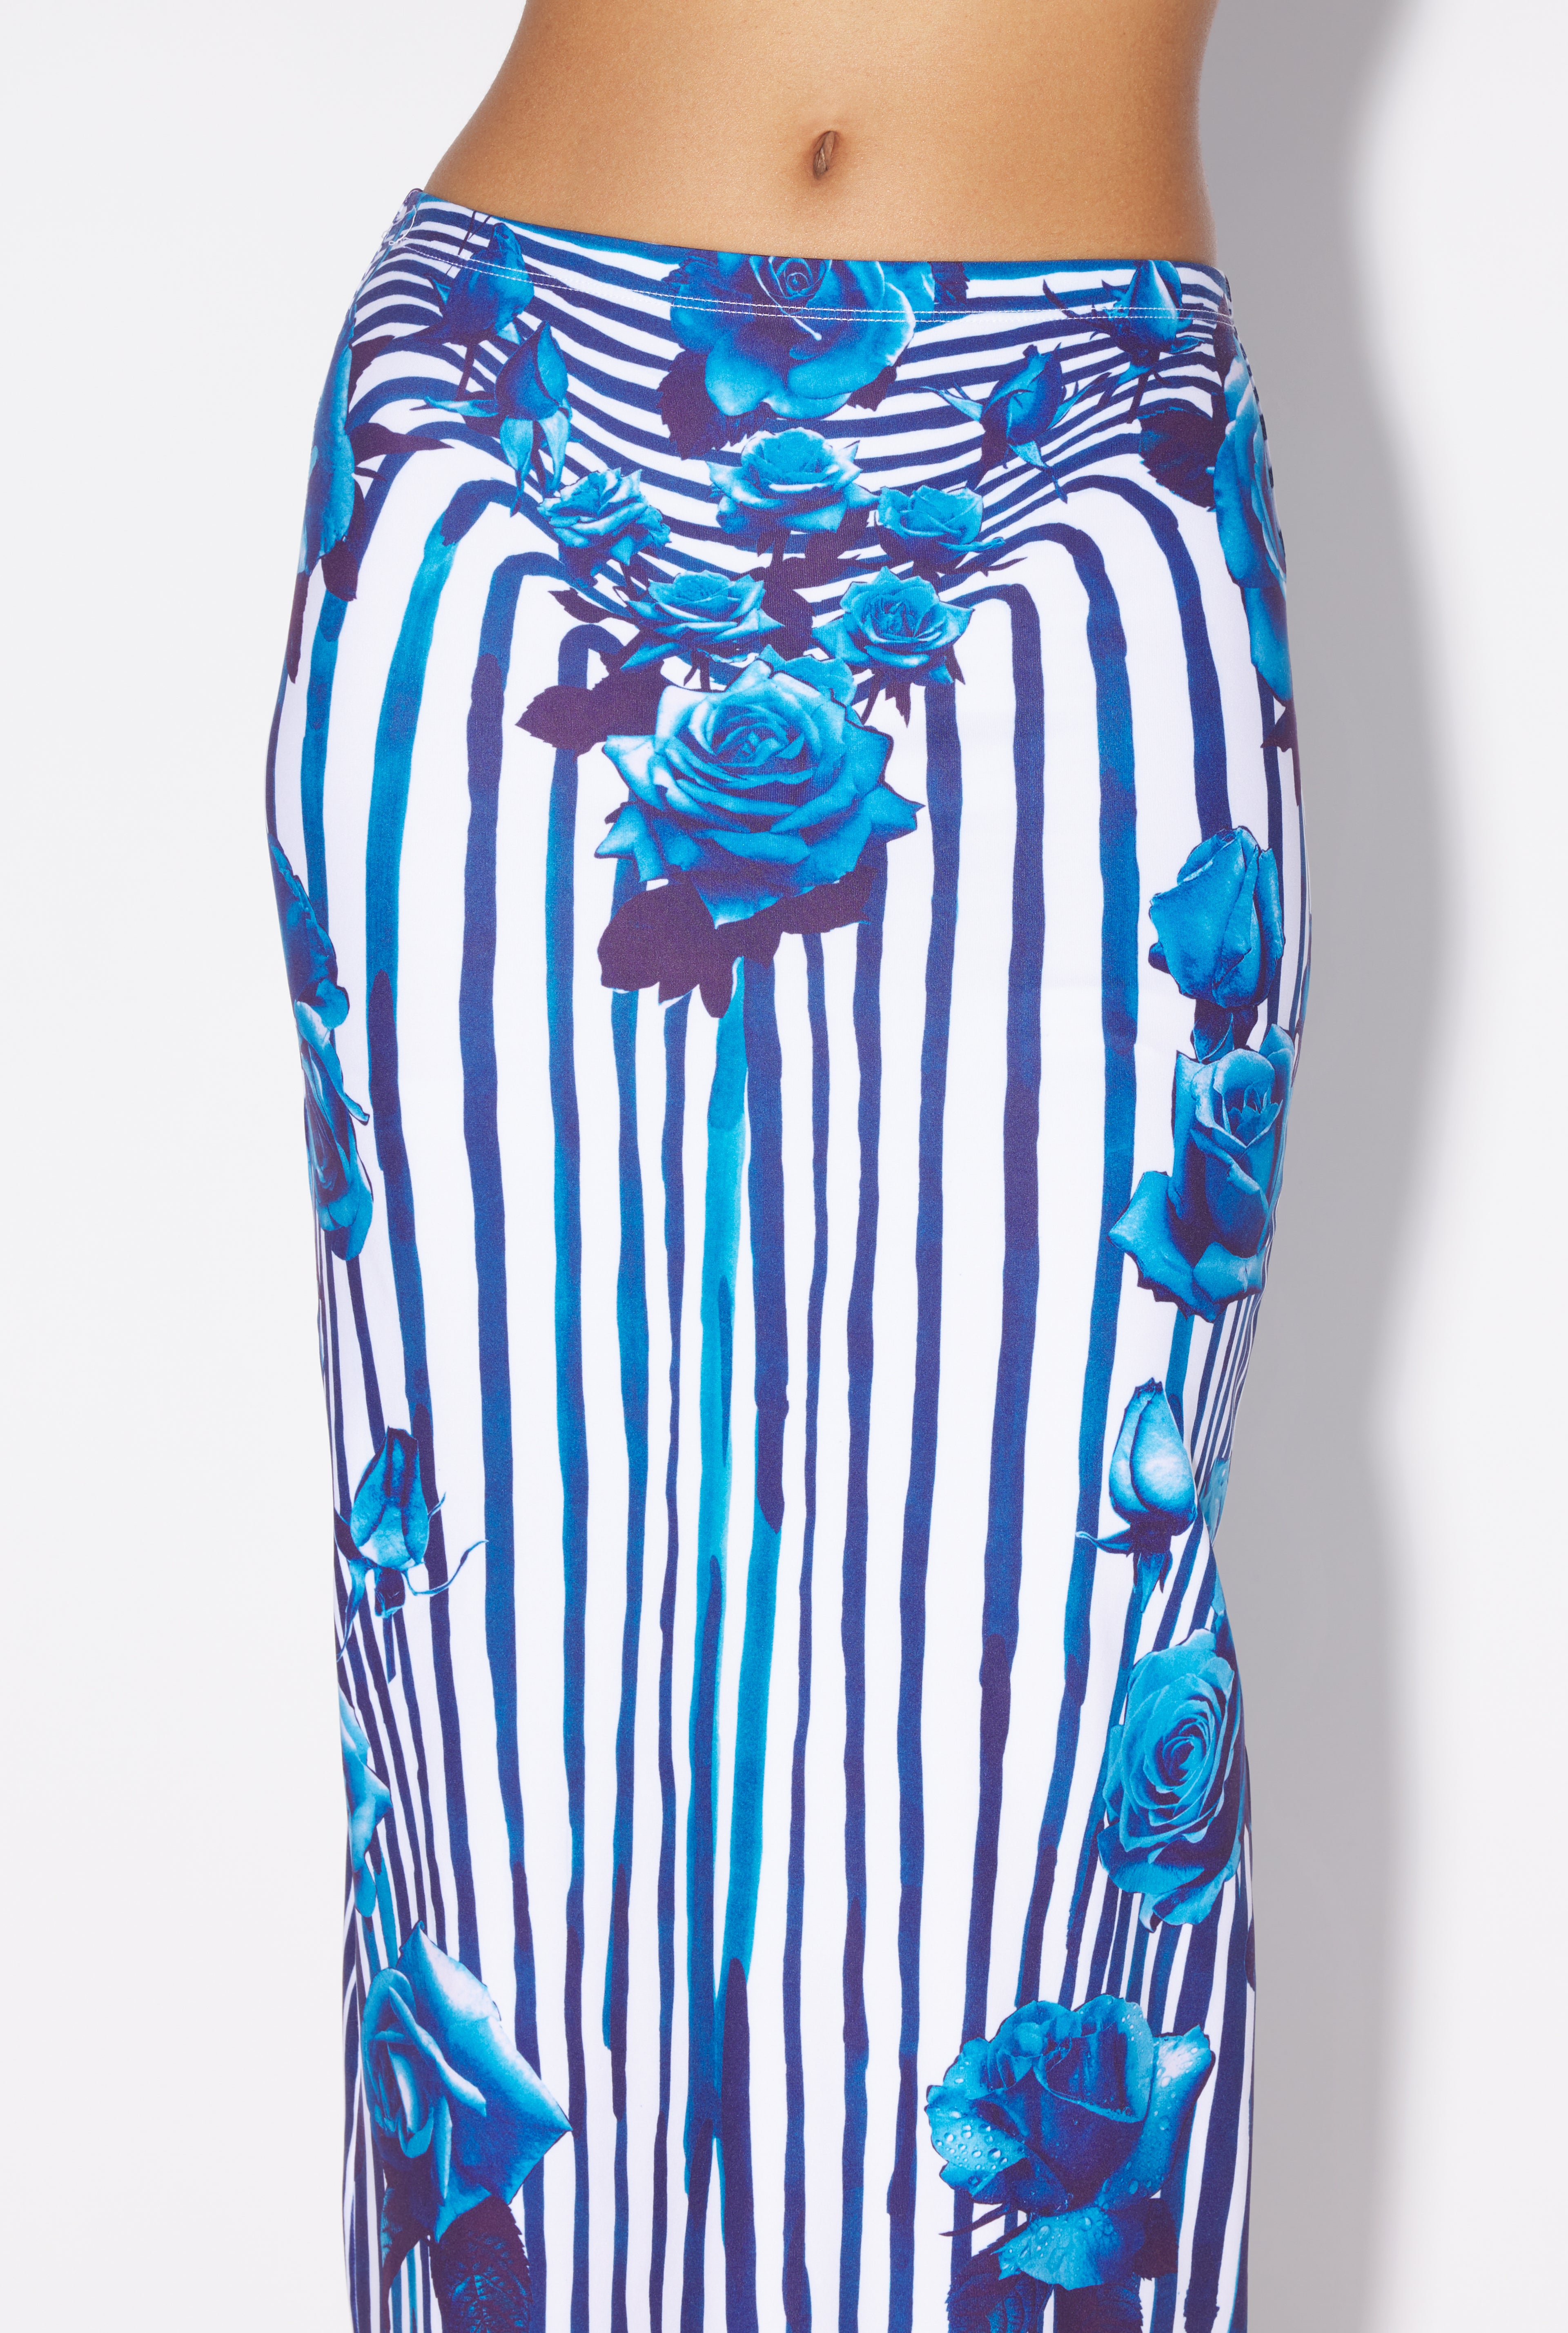 The Blue Flower Body Morphing Skirt